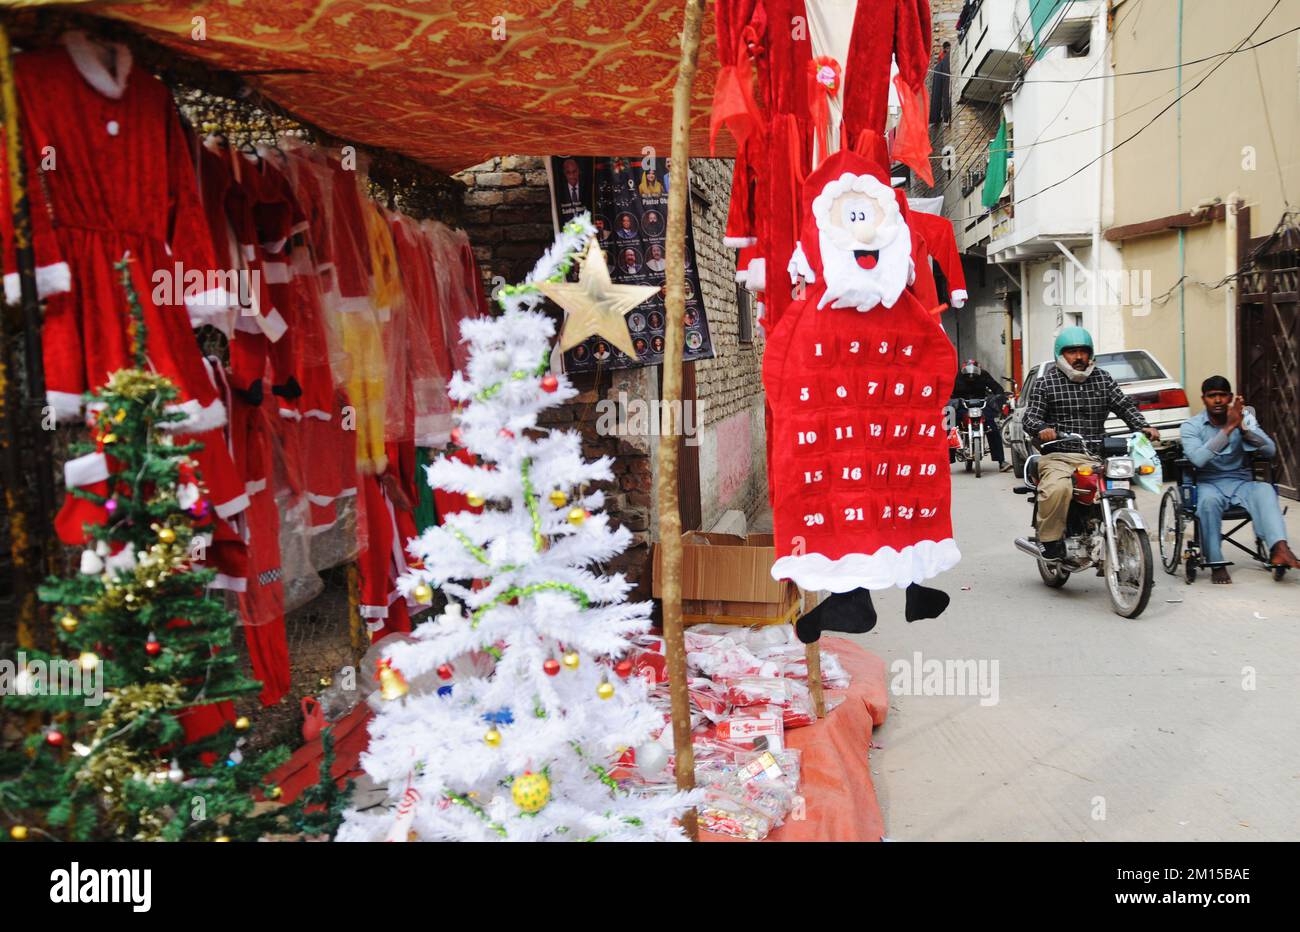 ISLAMABAD, PAKISTAN. Ein Verkäufer stellt Santa Claus-Outfits für das Weihnachtsfestival auf der G-7/2 aus und verkauft sie. Foto: Raja Imran Bahadar Stockfoto